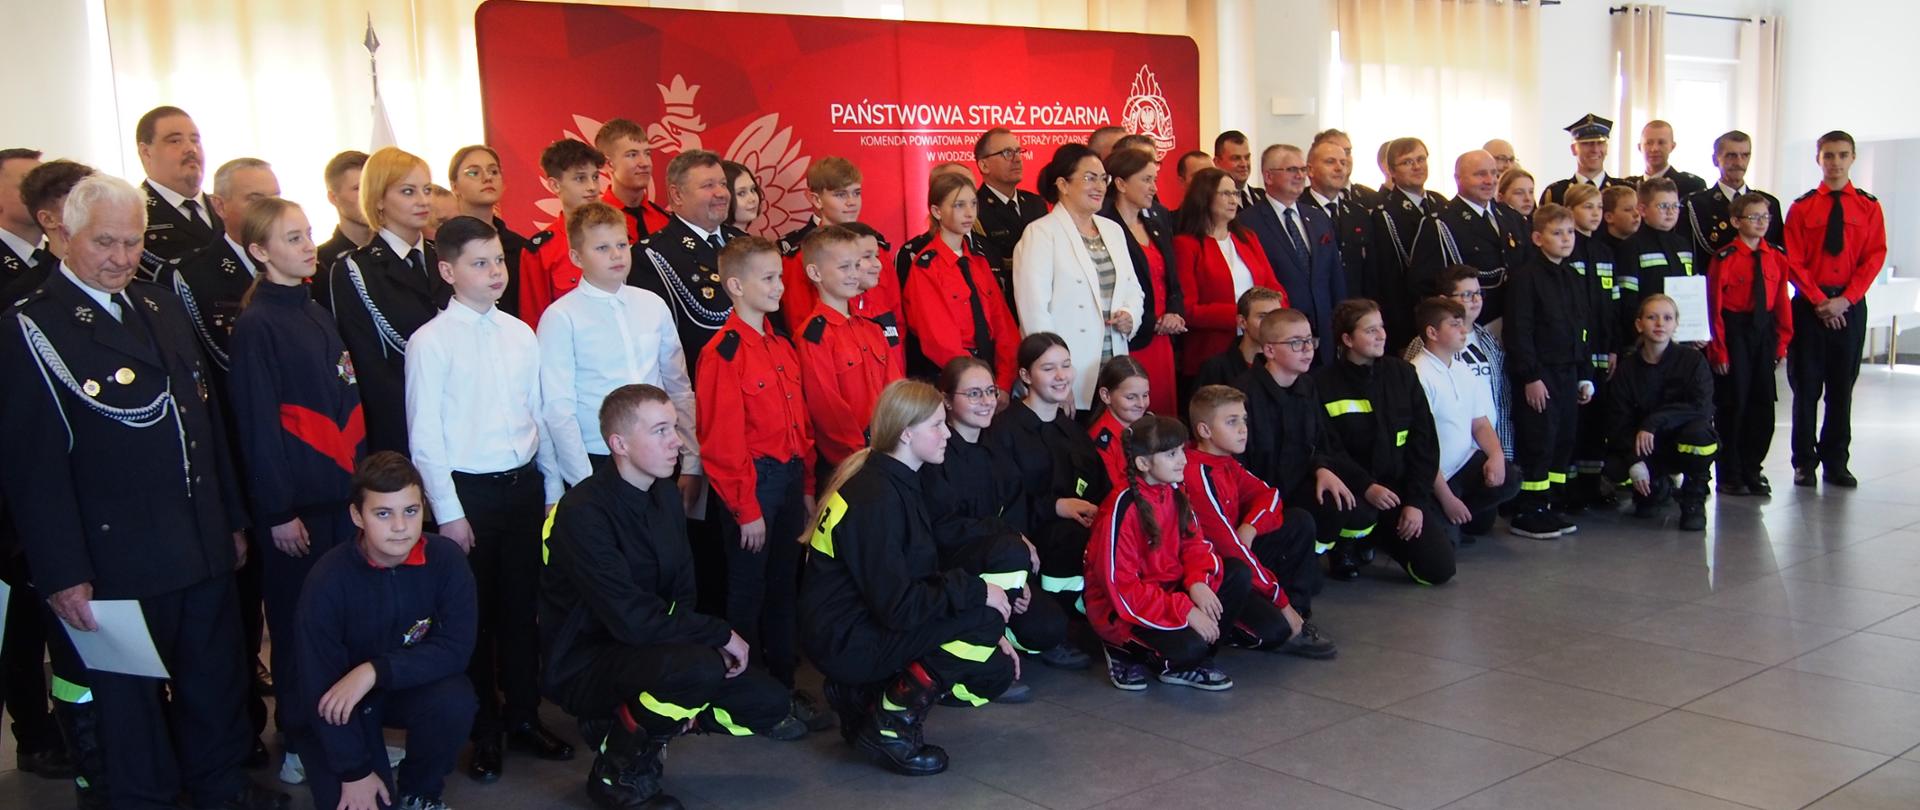 Uroczystość wręczenia promes dla Ochotniczych Straży Pożarnych na zakup sprzętu dla członków Młodzieżowych Drużyn Pożarniczych z terenu powiatu wodzisławskiego